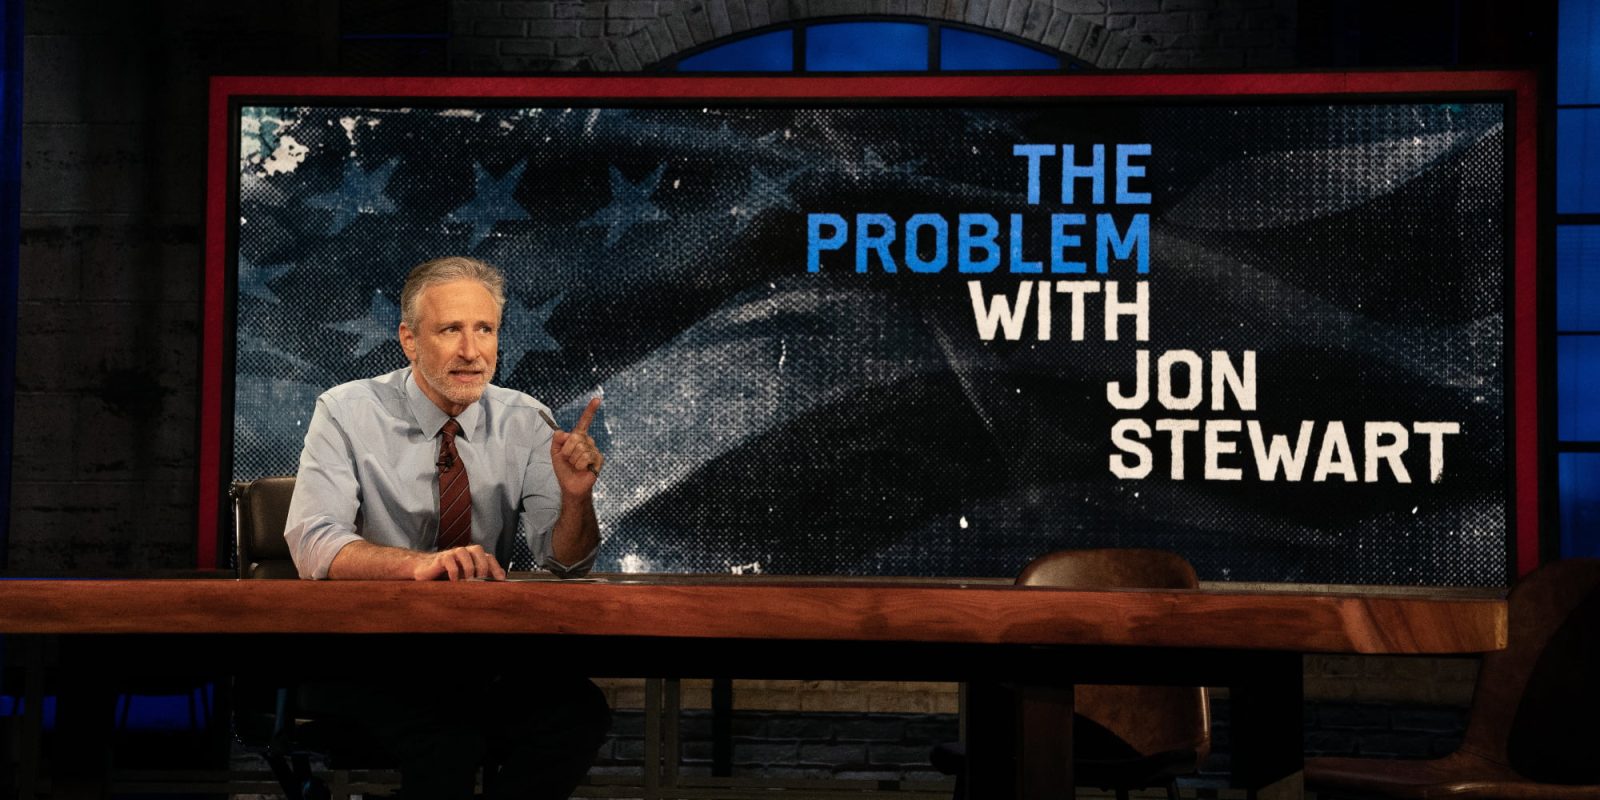 Jon Stewart interview